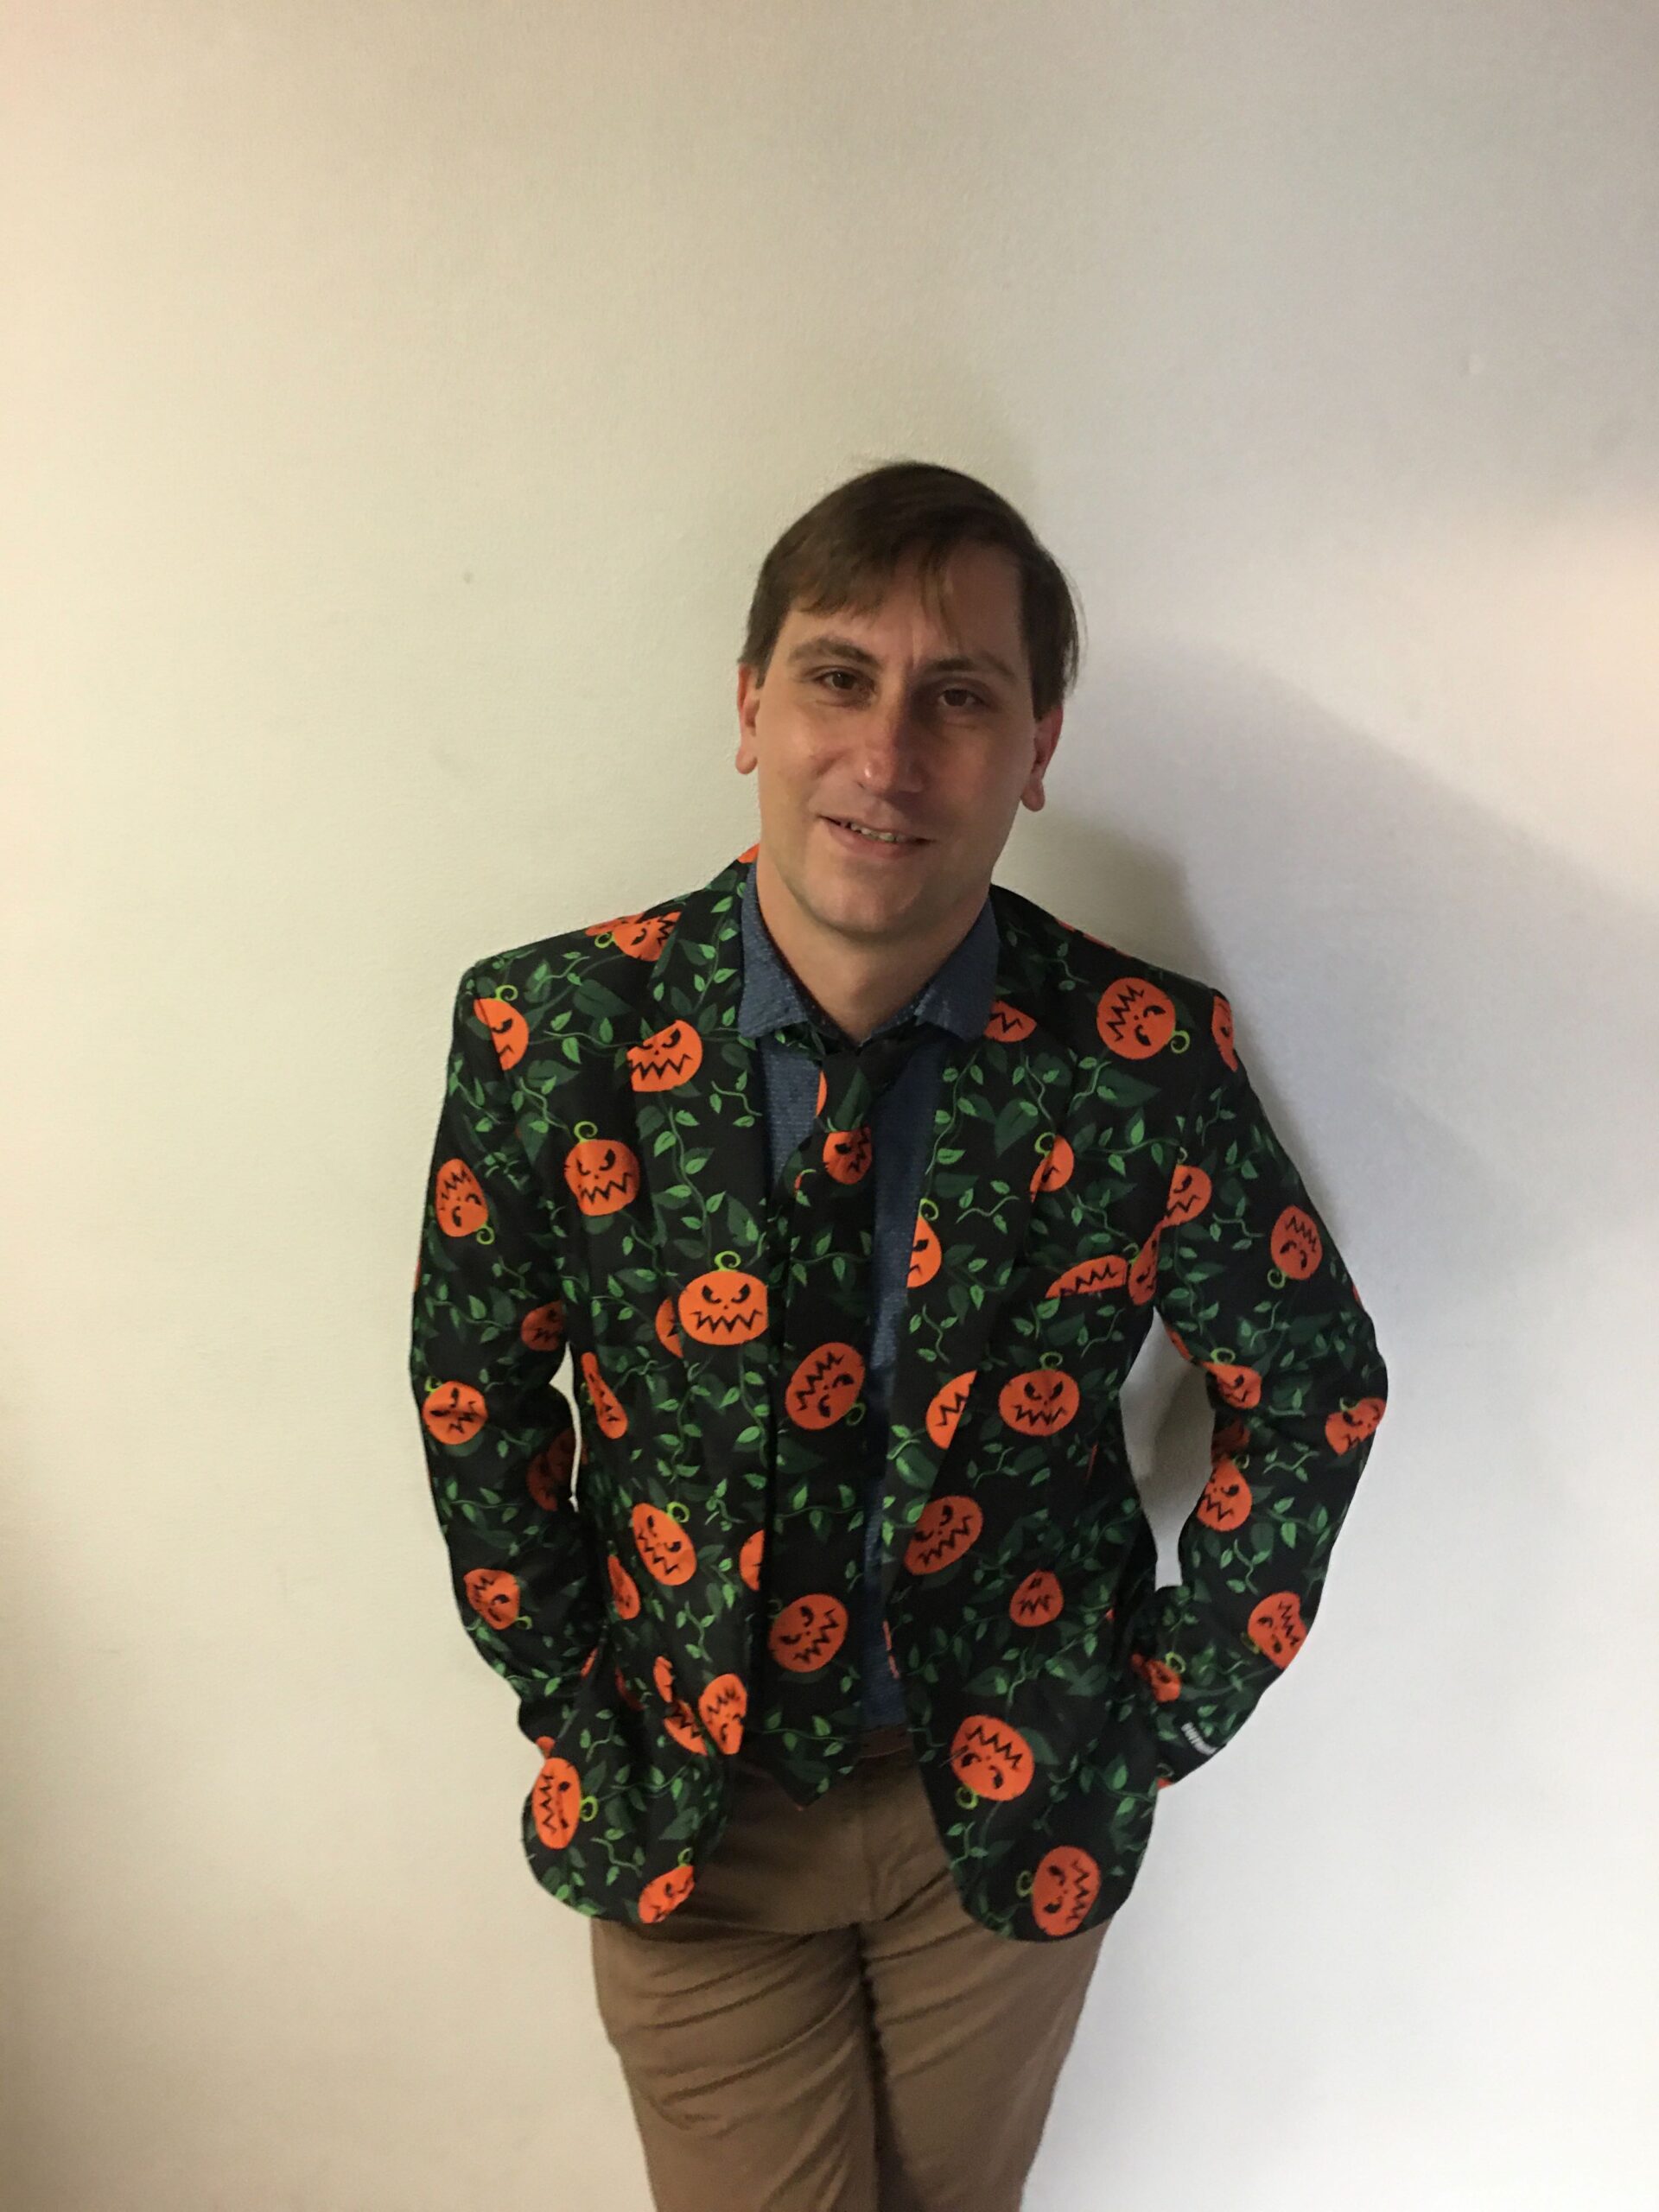 2019-11: Trick or Treat! Herr Dietwald war auf jeden Fall perfekt auf Halloween vorbereitet!